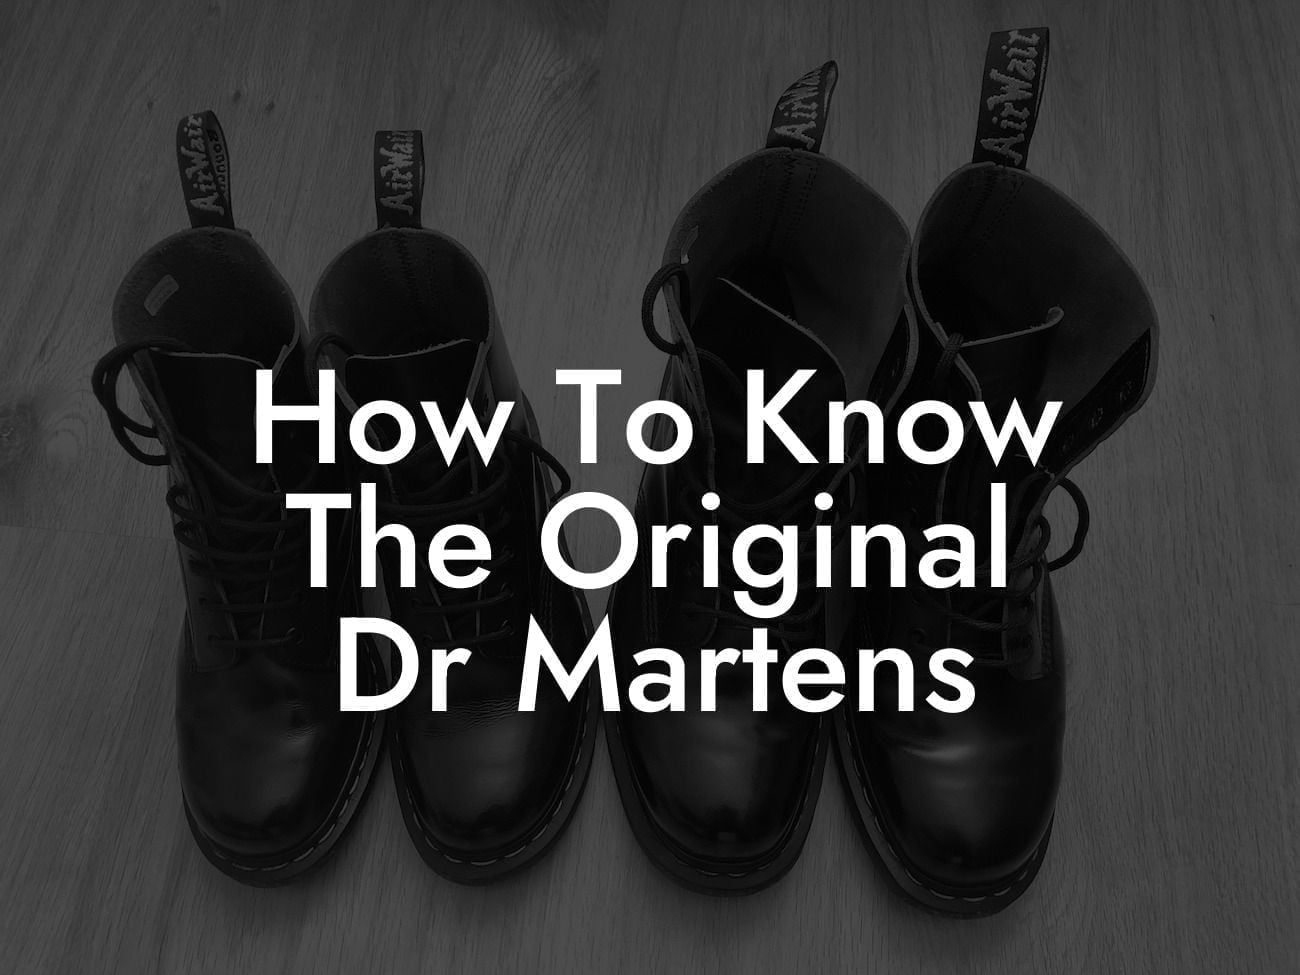 How To Know The Original Dr Martens